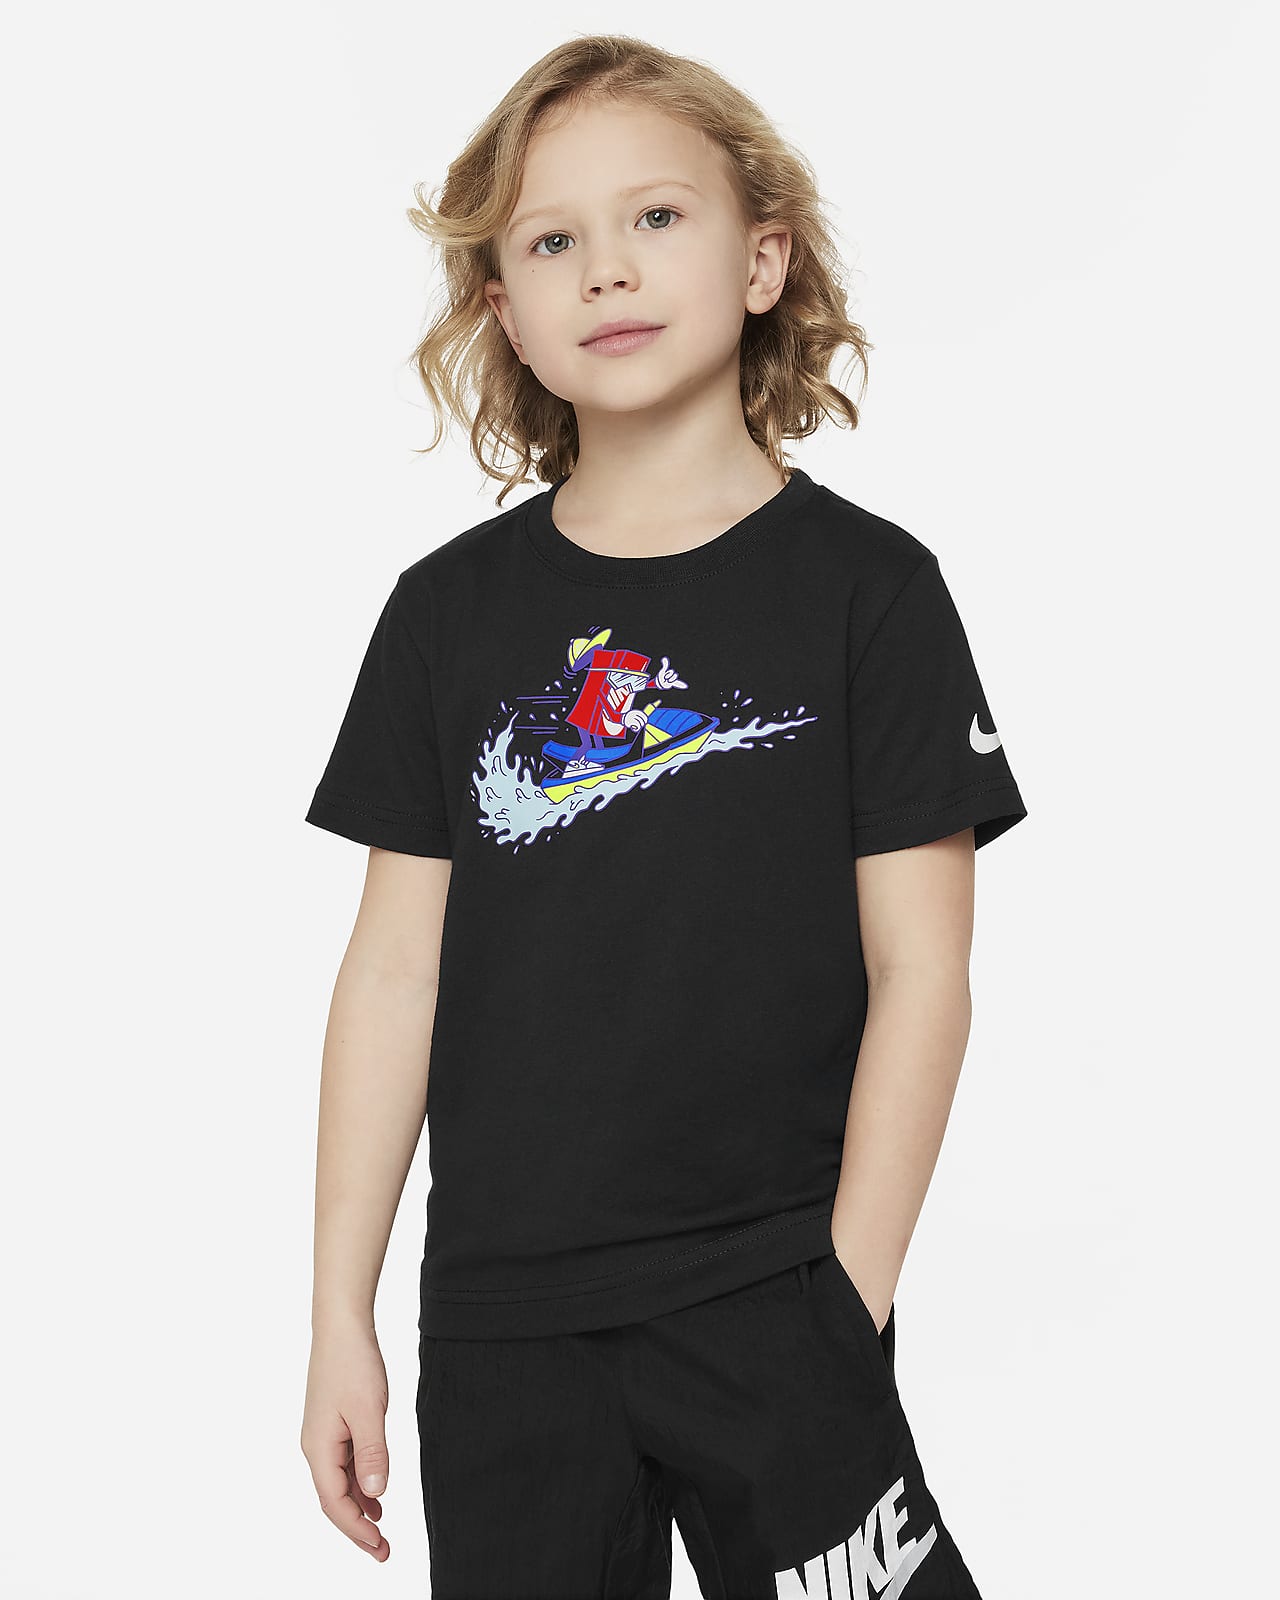 Volné tričko s vodním skútrem Nike pro malé děti